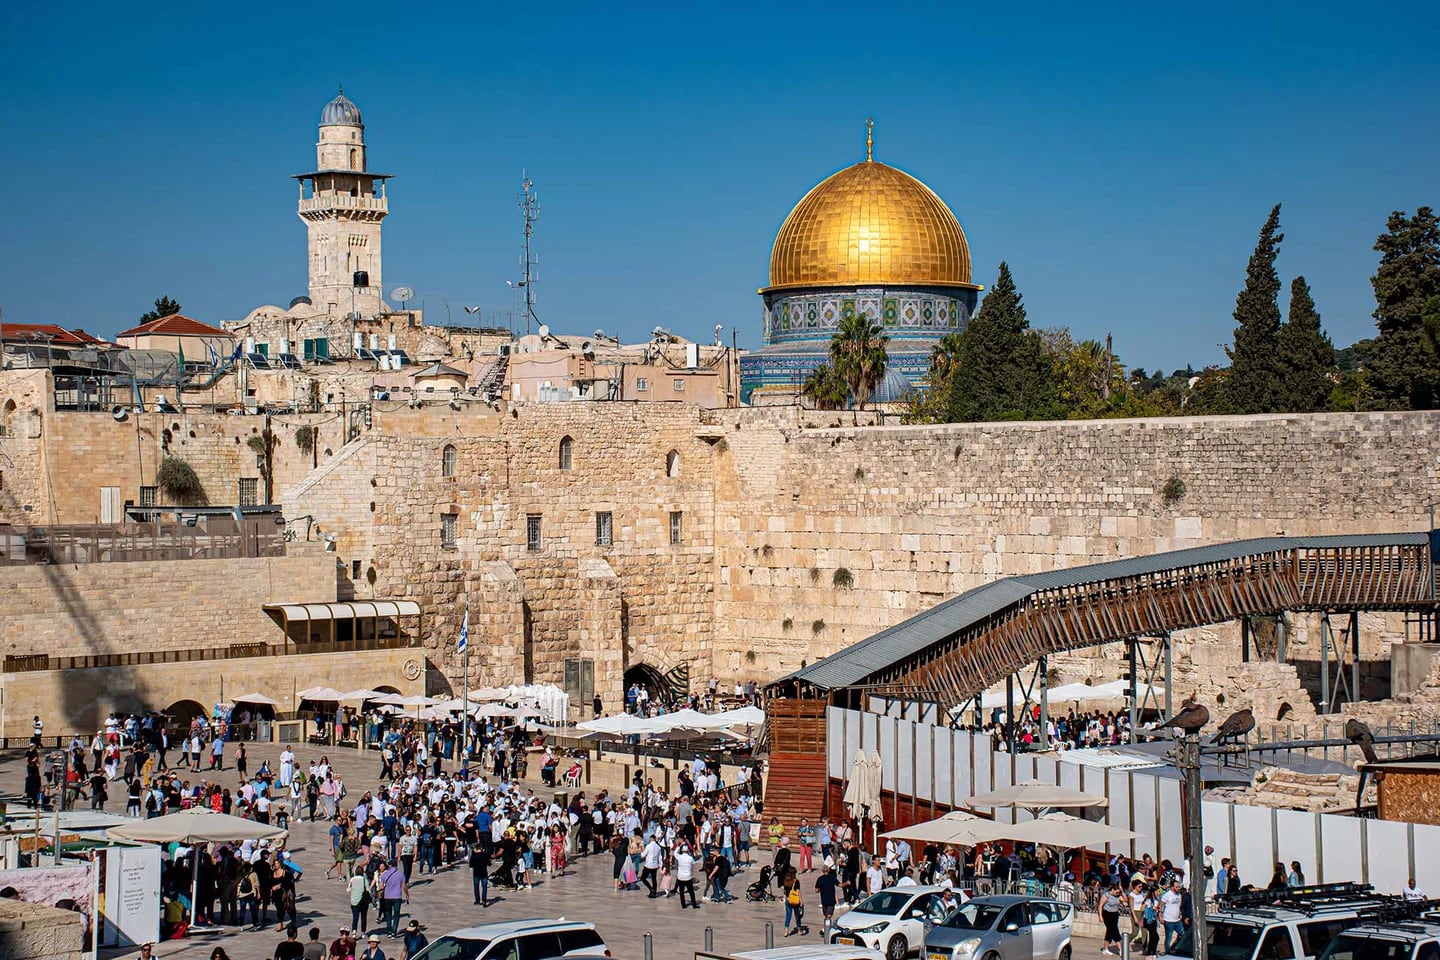 La ciudad vieja de Jerusalén fue declarada Patrimonio de la Humanidad por la Unesco en 1981 (Foto: Oficina de Turismo de Jerusalén)